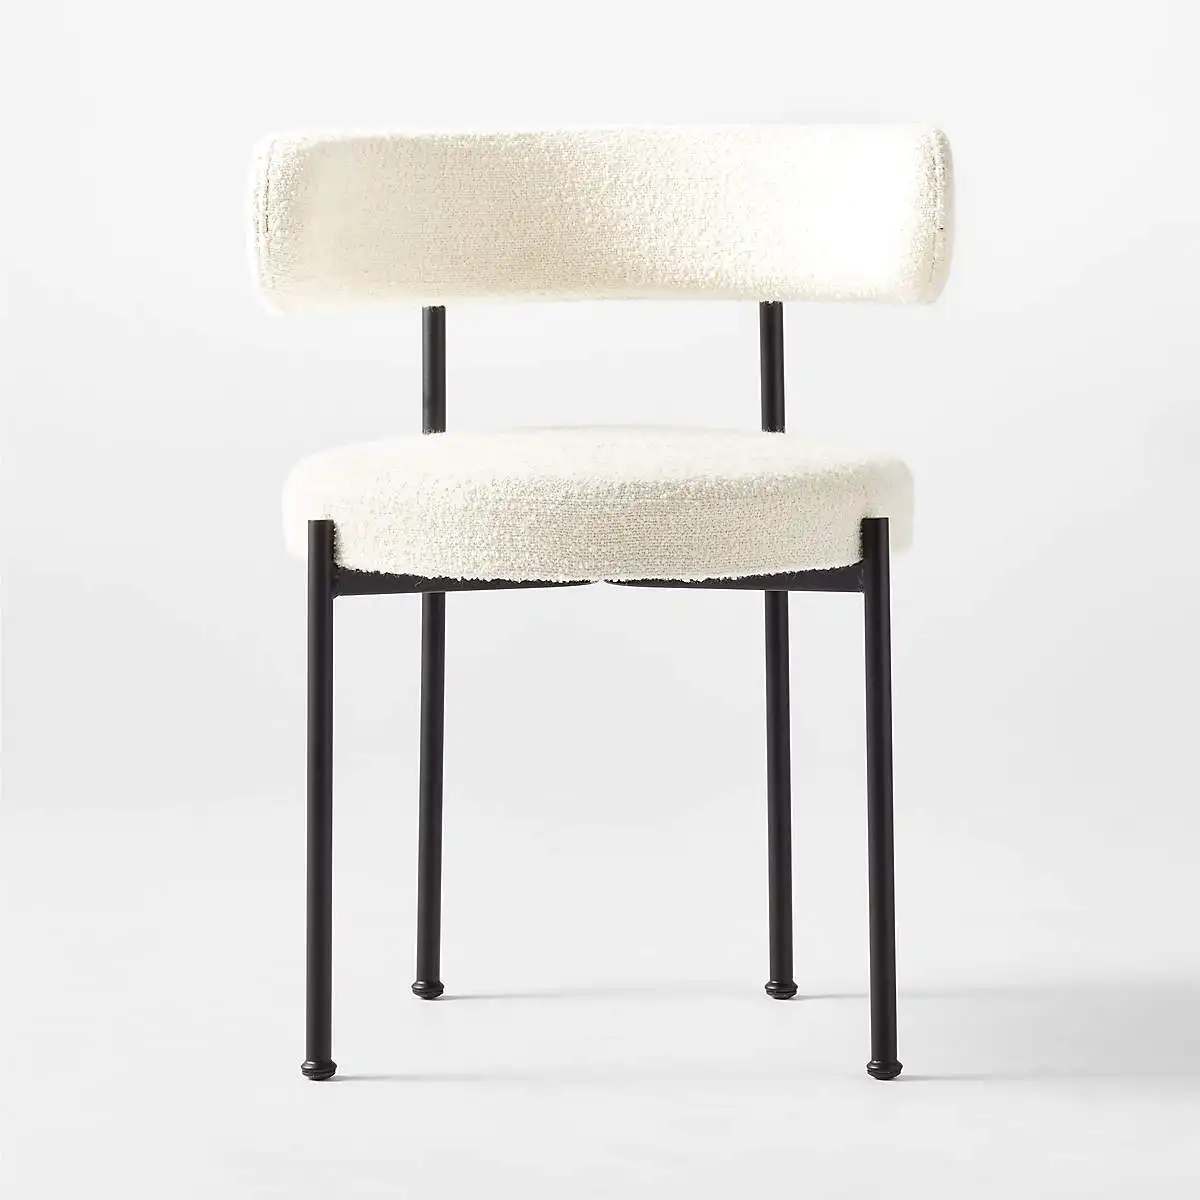 Silla de comedor estilo nórdico con patas de Metal, sillón de tela de mezcla de lana, color blanco y negro